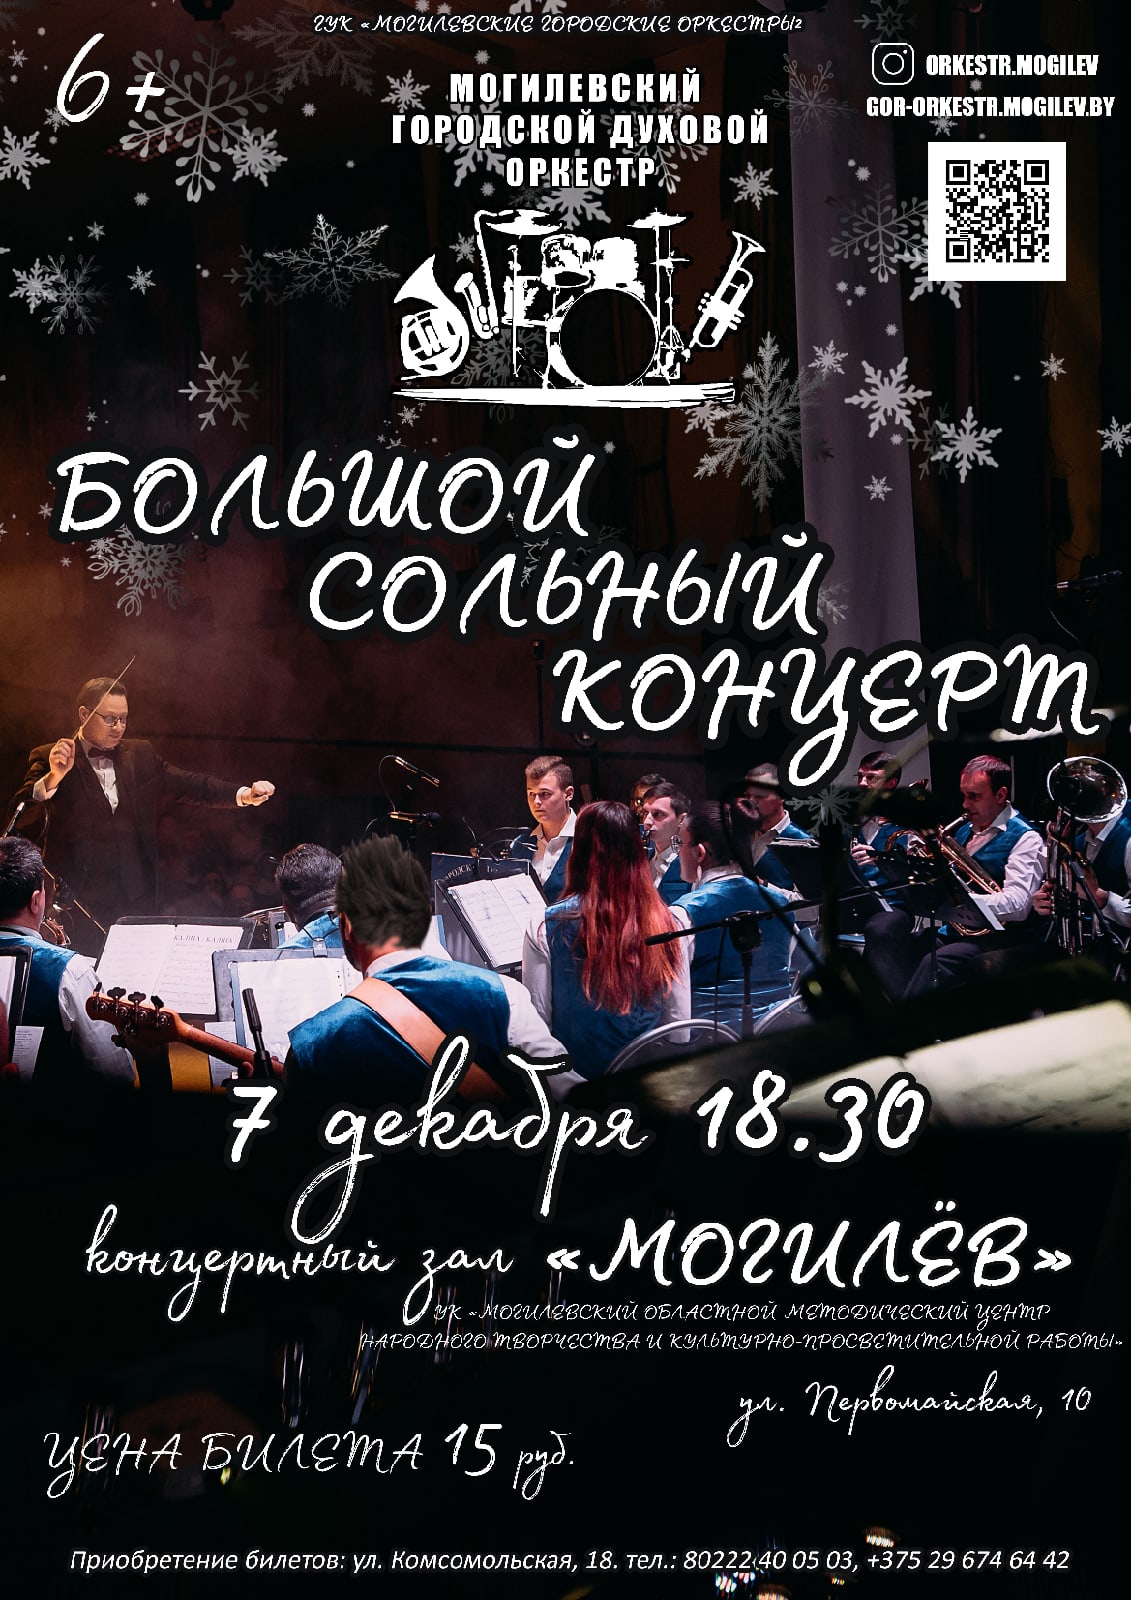 Большой сольный концерт городского духового оркестра состоится в Могилеве 7 декабря